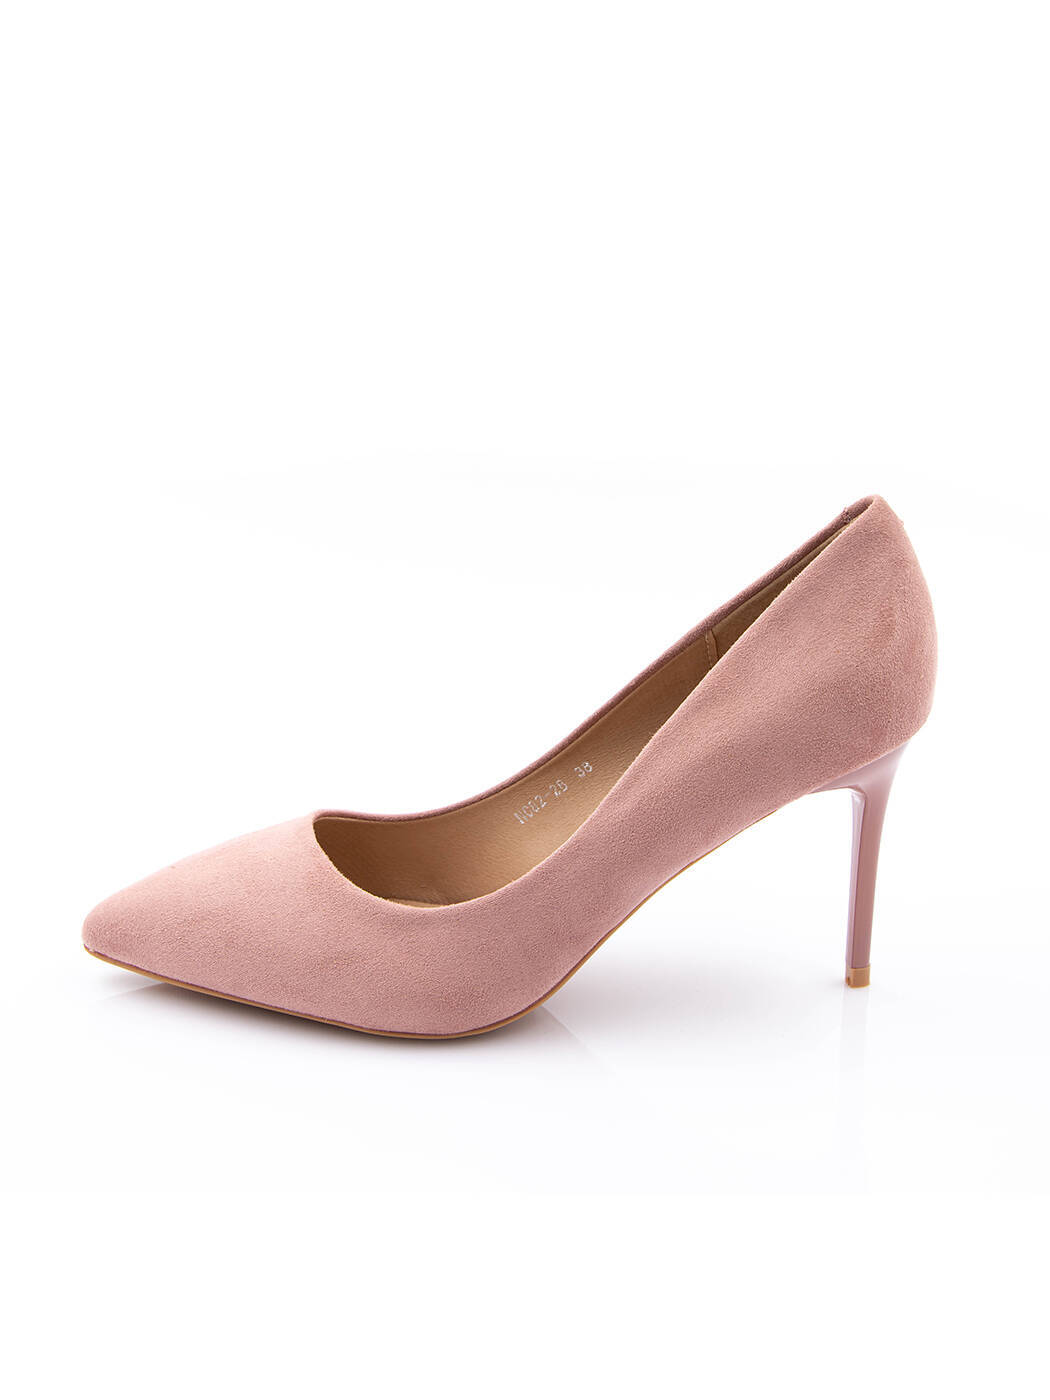 Туфли женские розовые экозамша каблук шпилька демисезон от производителя BM